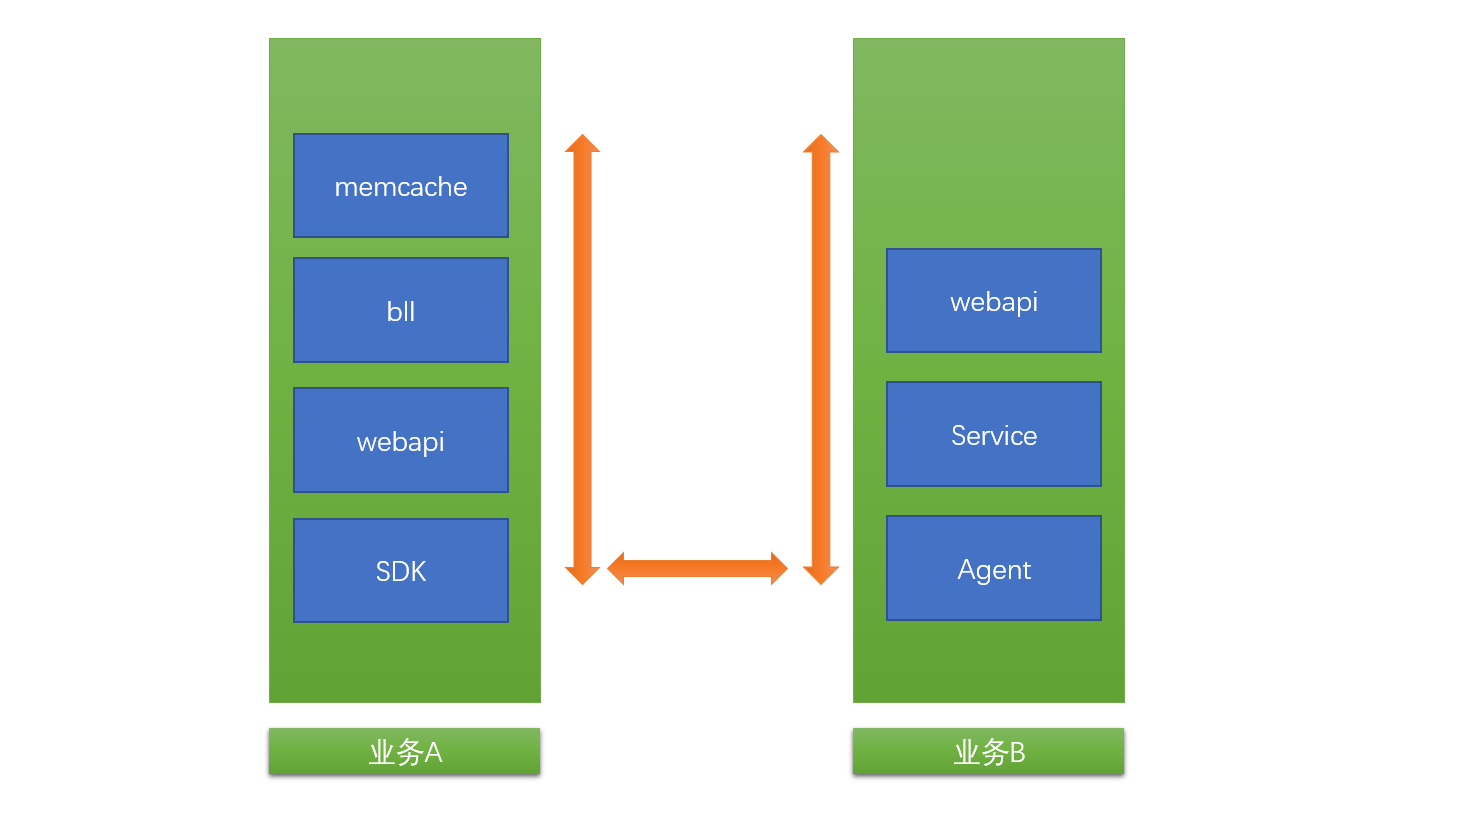 微服务的堆栈要处理webapi<--->Service<---->Agent<--->SDK<---->webapi<----->bll<---->memcache,涉及多个工程